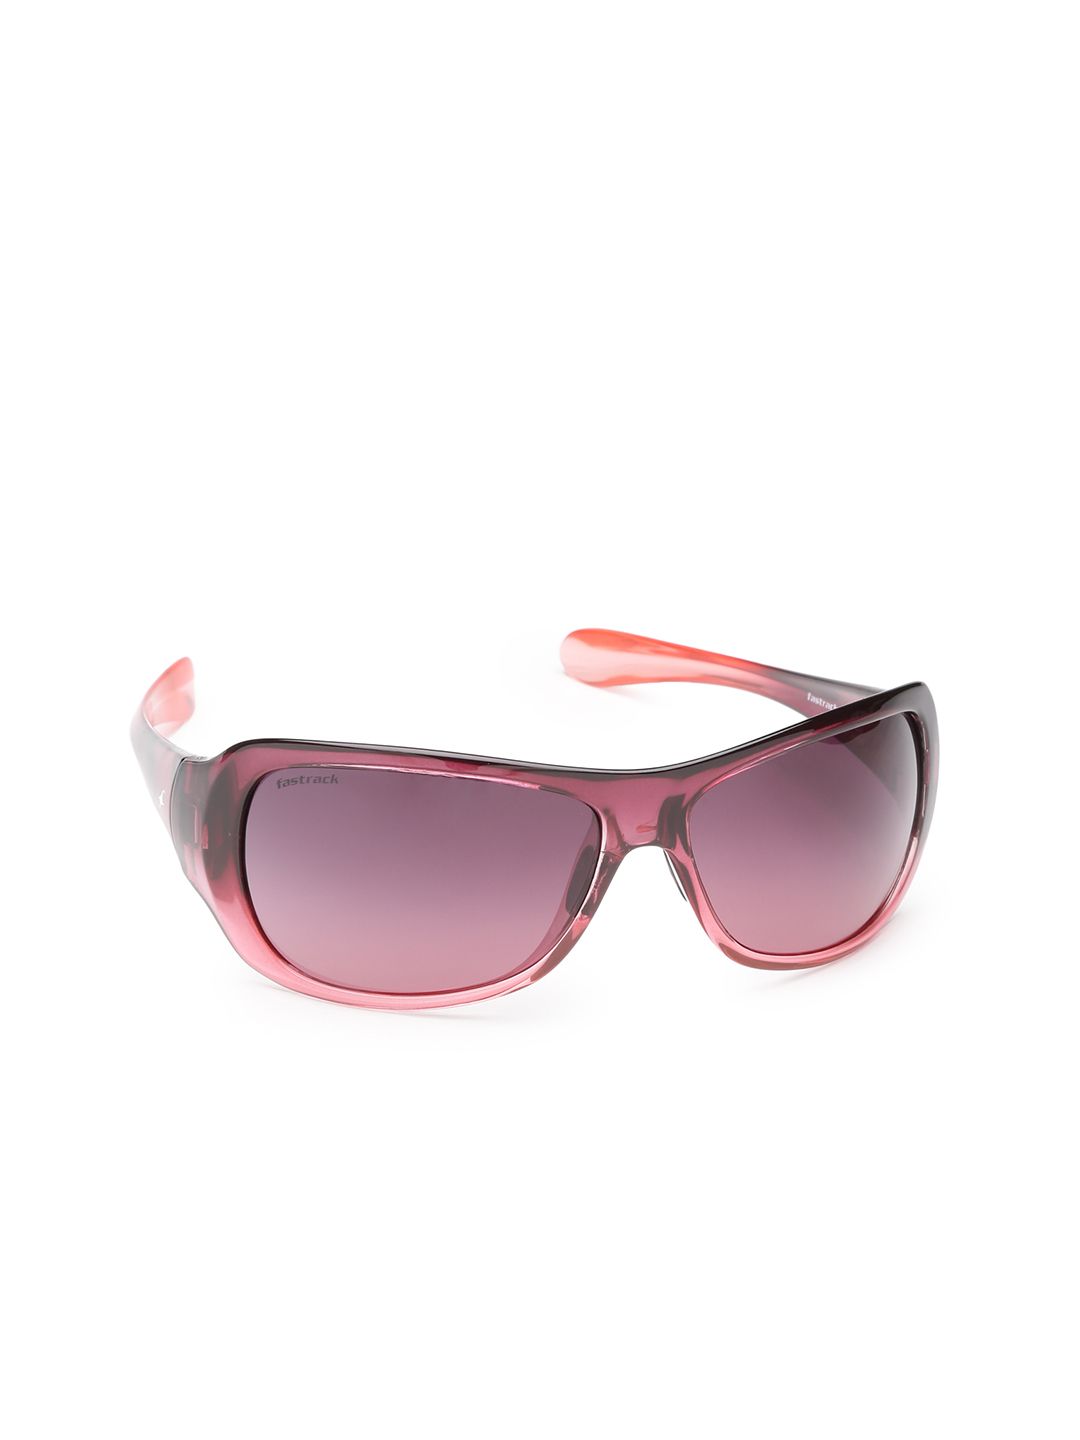 Fastrack Women Square Sunglasses P399BK2F Price in India